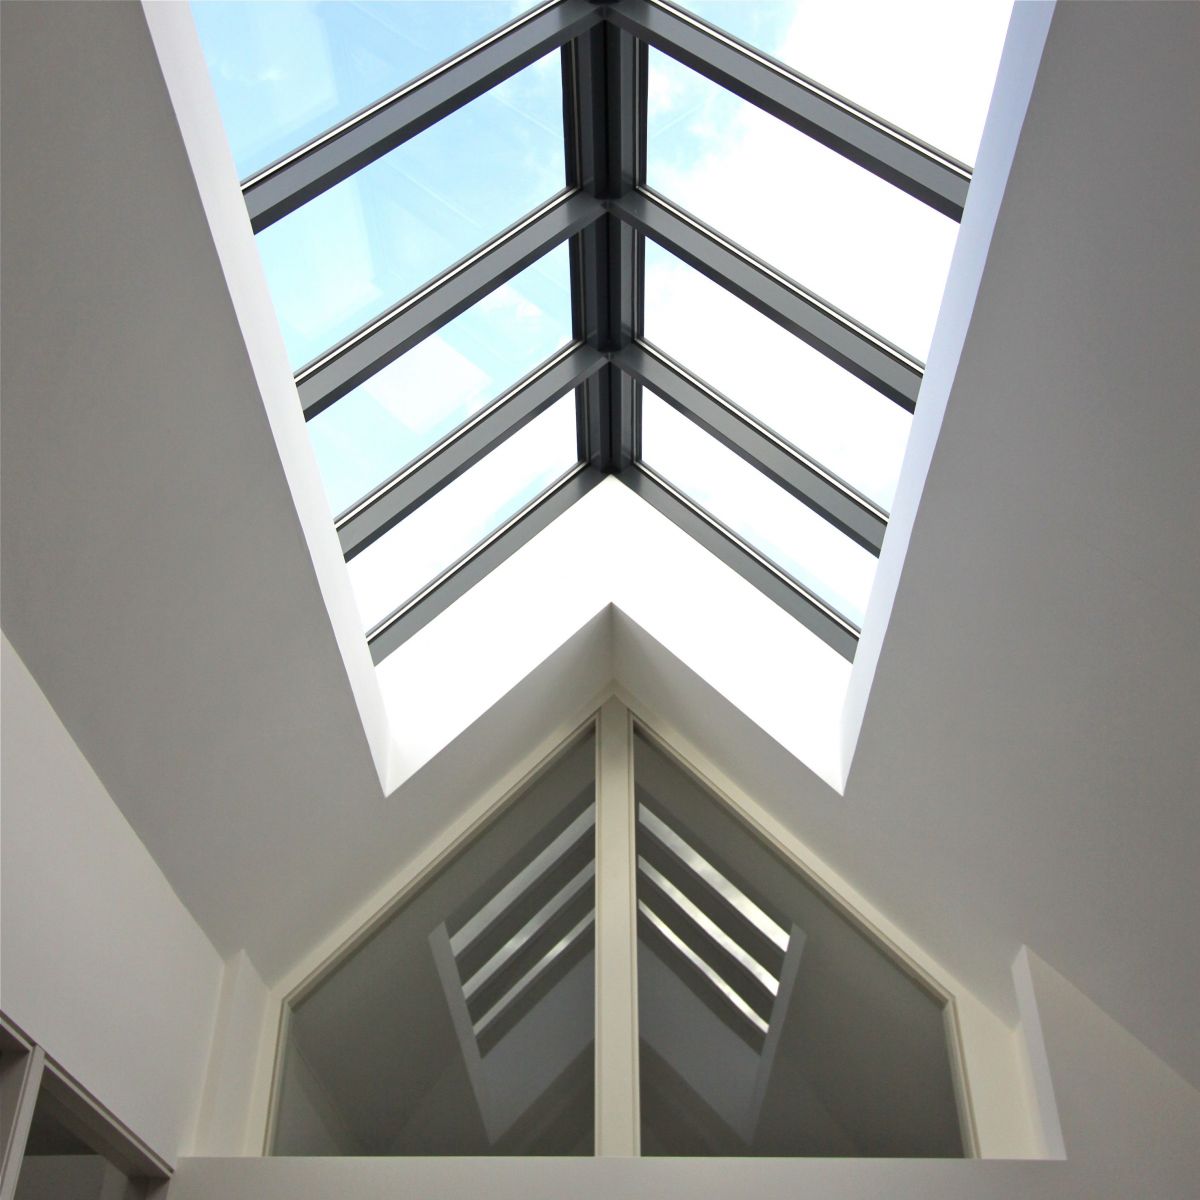 Có nên dùng tấm lợp polycarbonate để lợp mái nhà dân dụng để ánh sáng có thể xuyên qua?